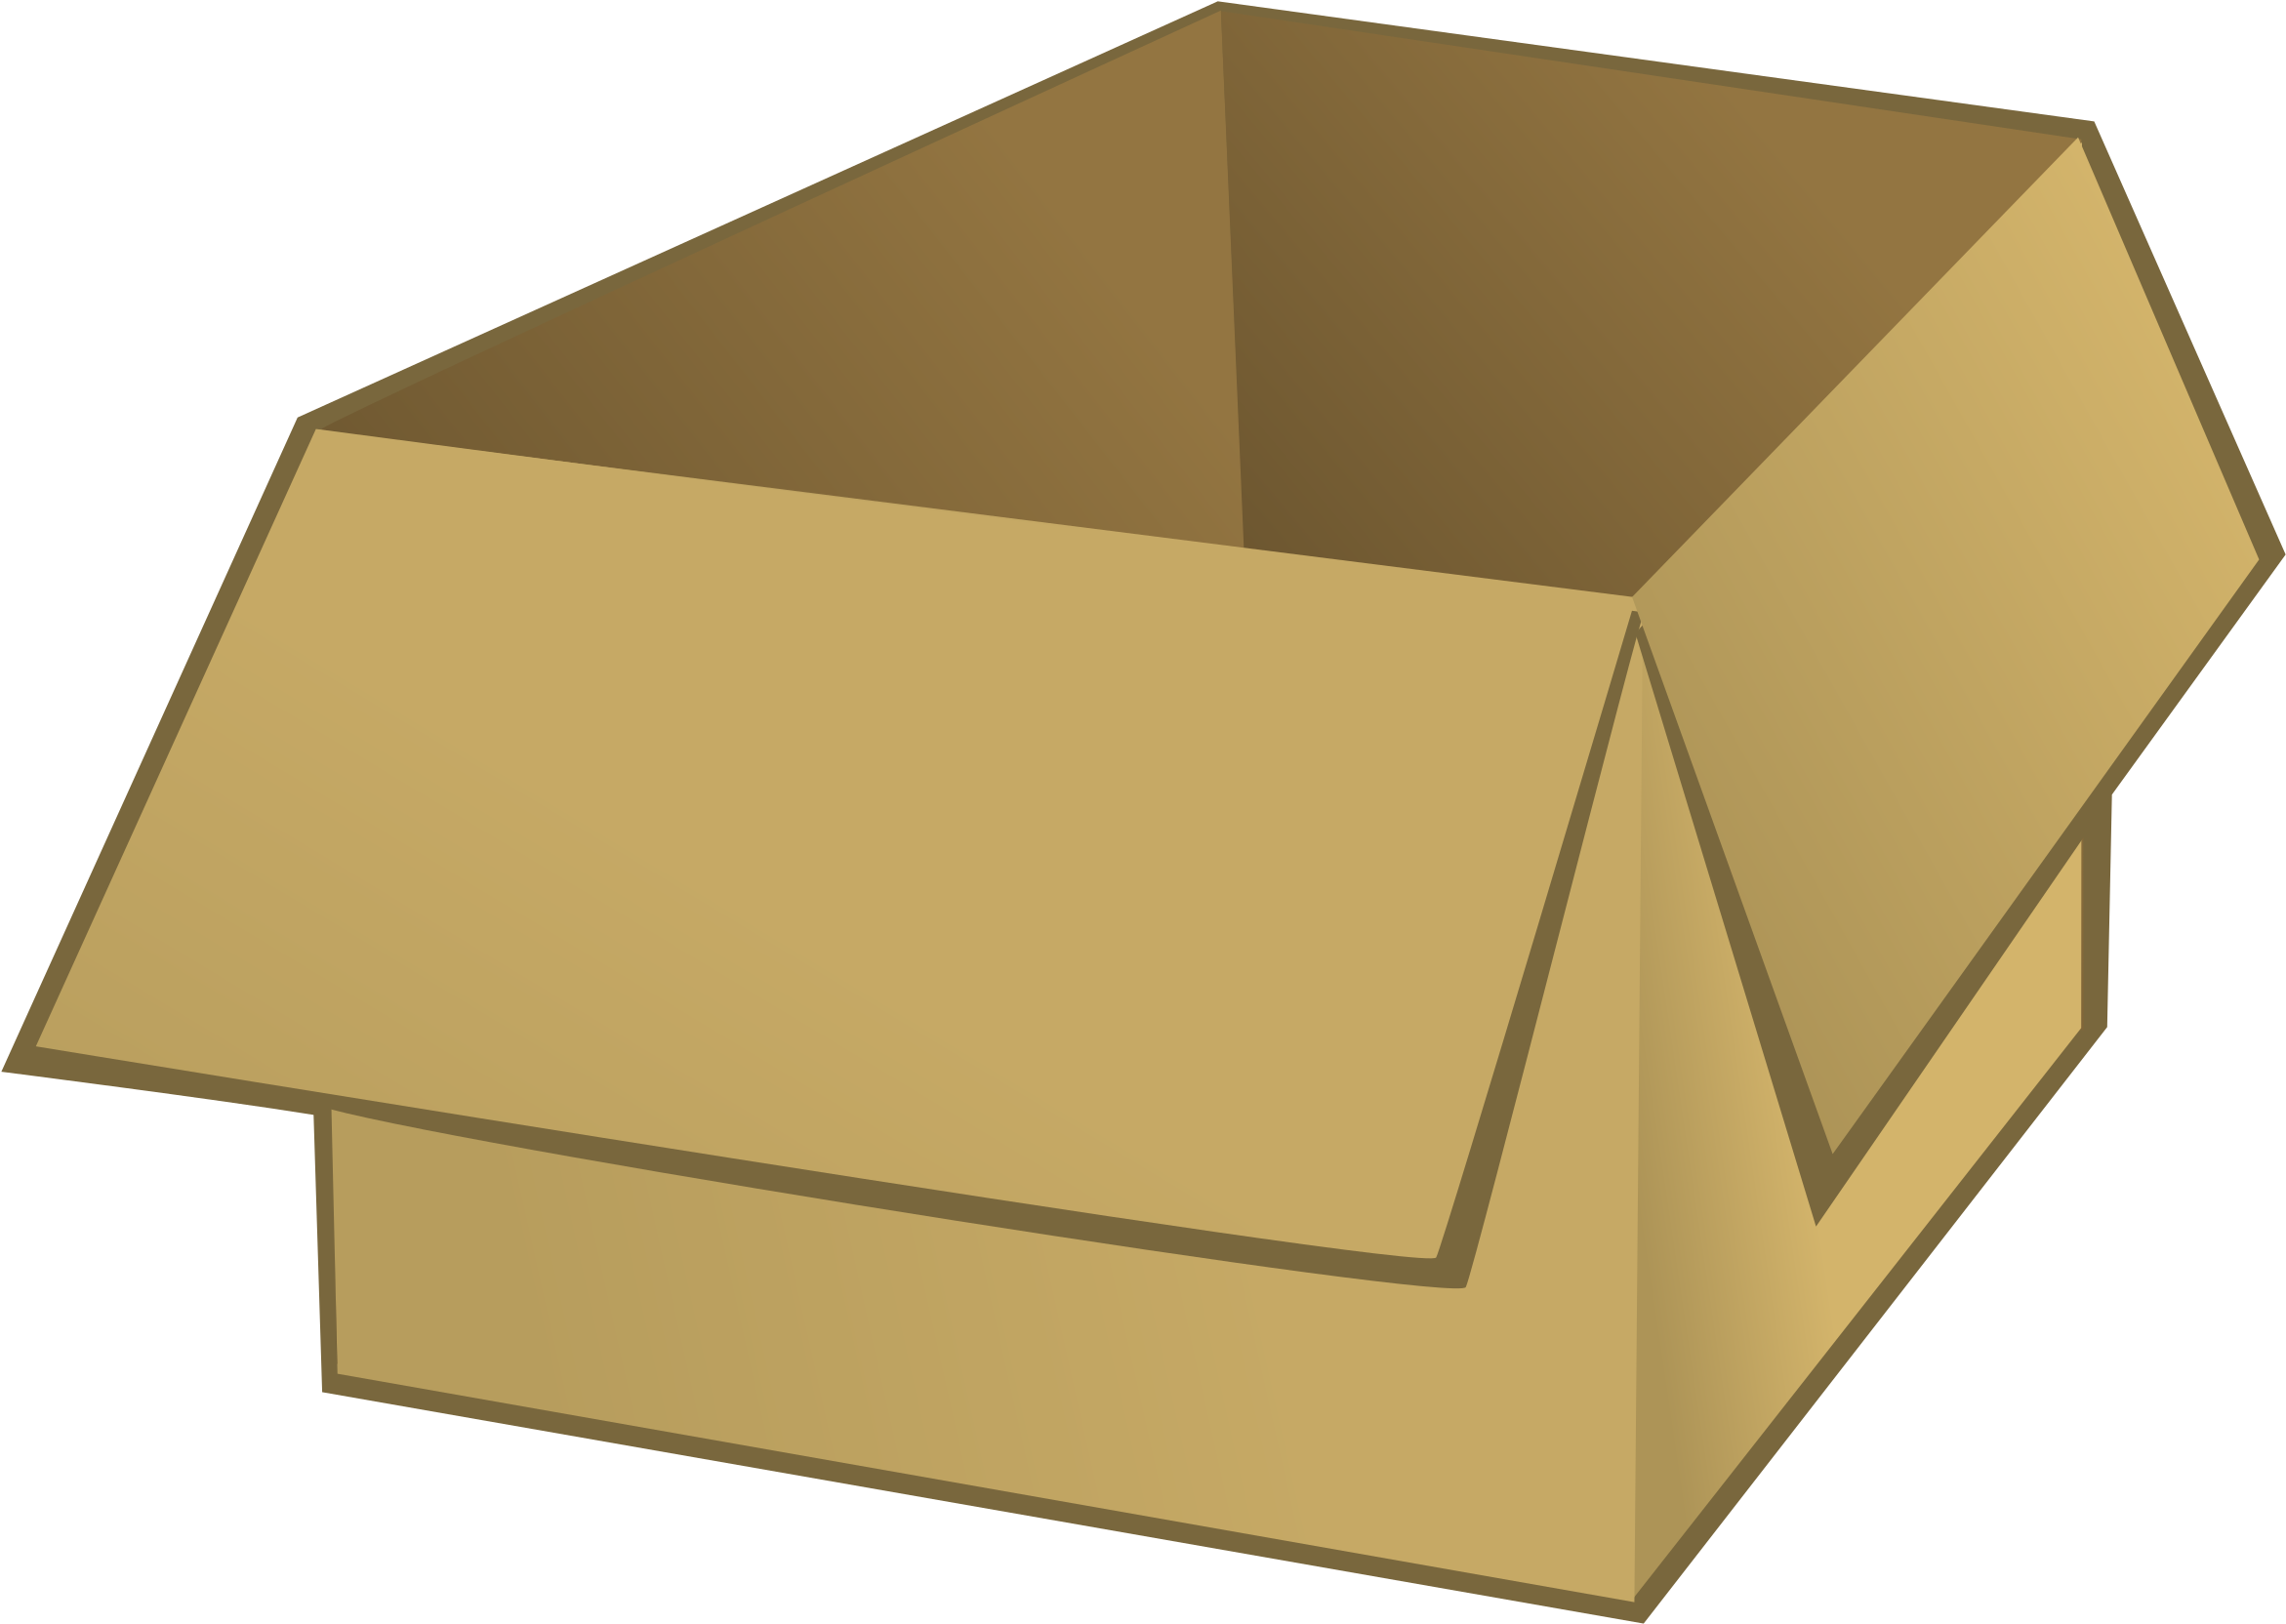 Cardboard Box PNG Photos